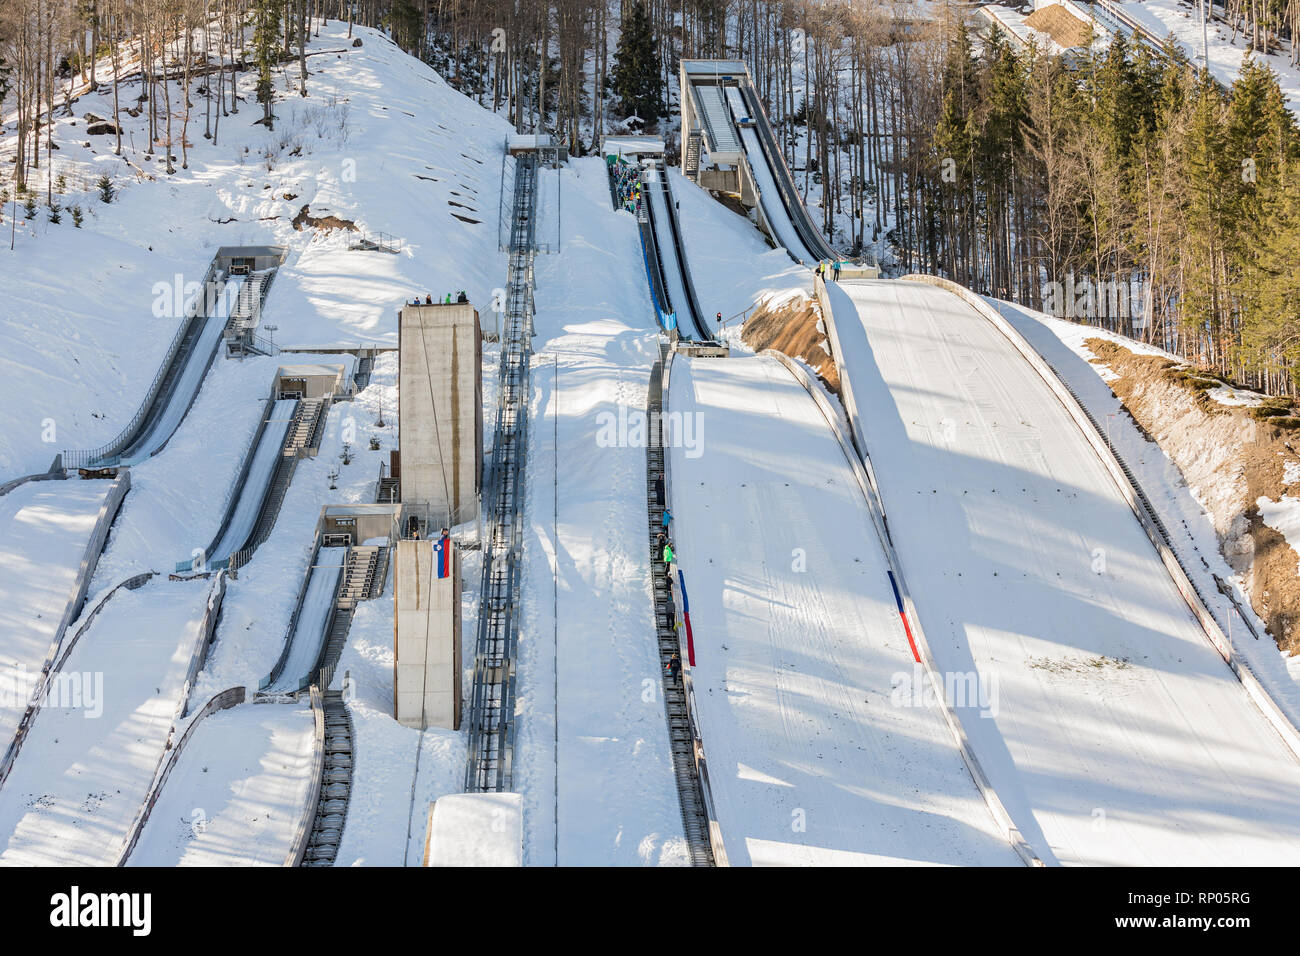 Sprungschanzen in Planica Nordic Center, Komplex von Ski Jump Hügel sonnigen Wintertag. Planica ist berühmt Skispringen Veranstaltungsort mit fliegenden Hügel von Gori ek brothe Stockfoto